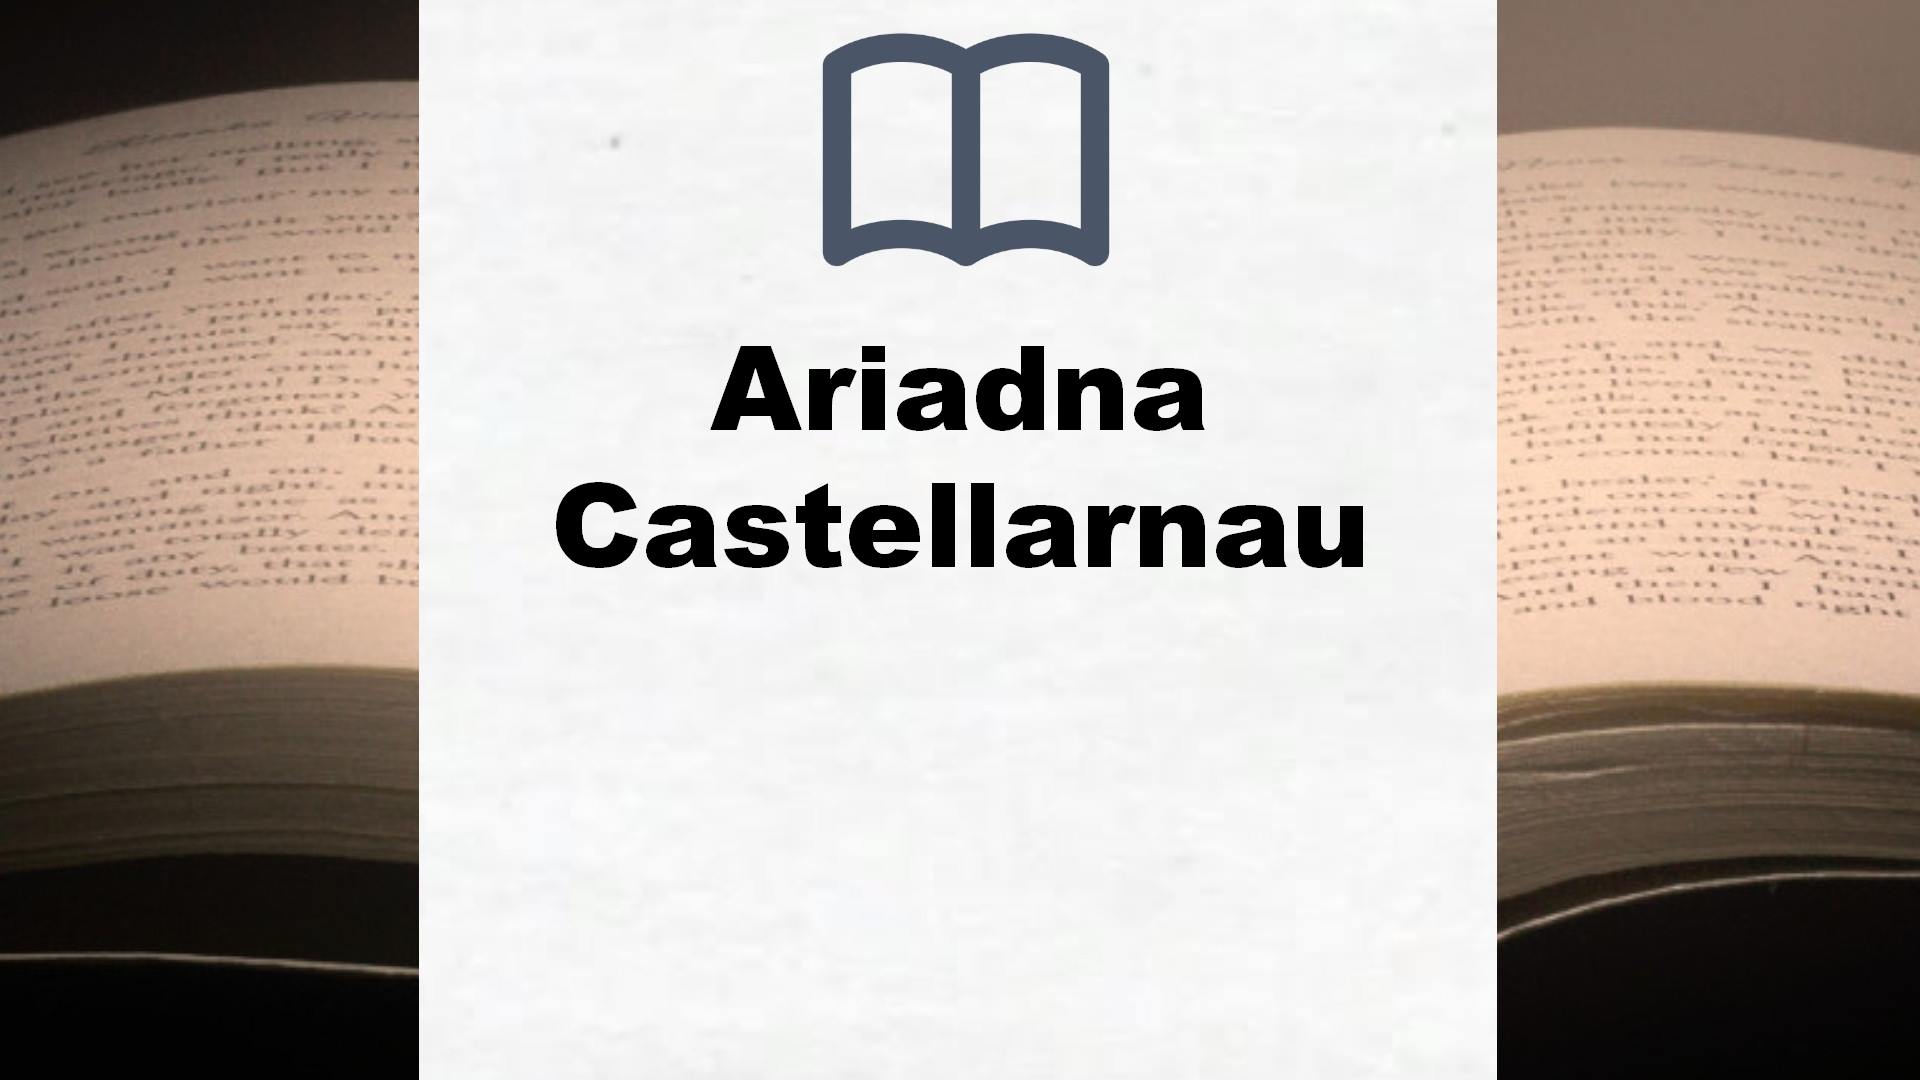 Libros Ariadna Castellarnau